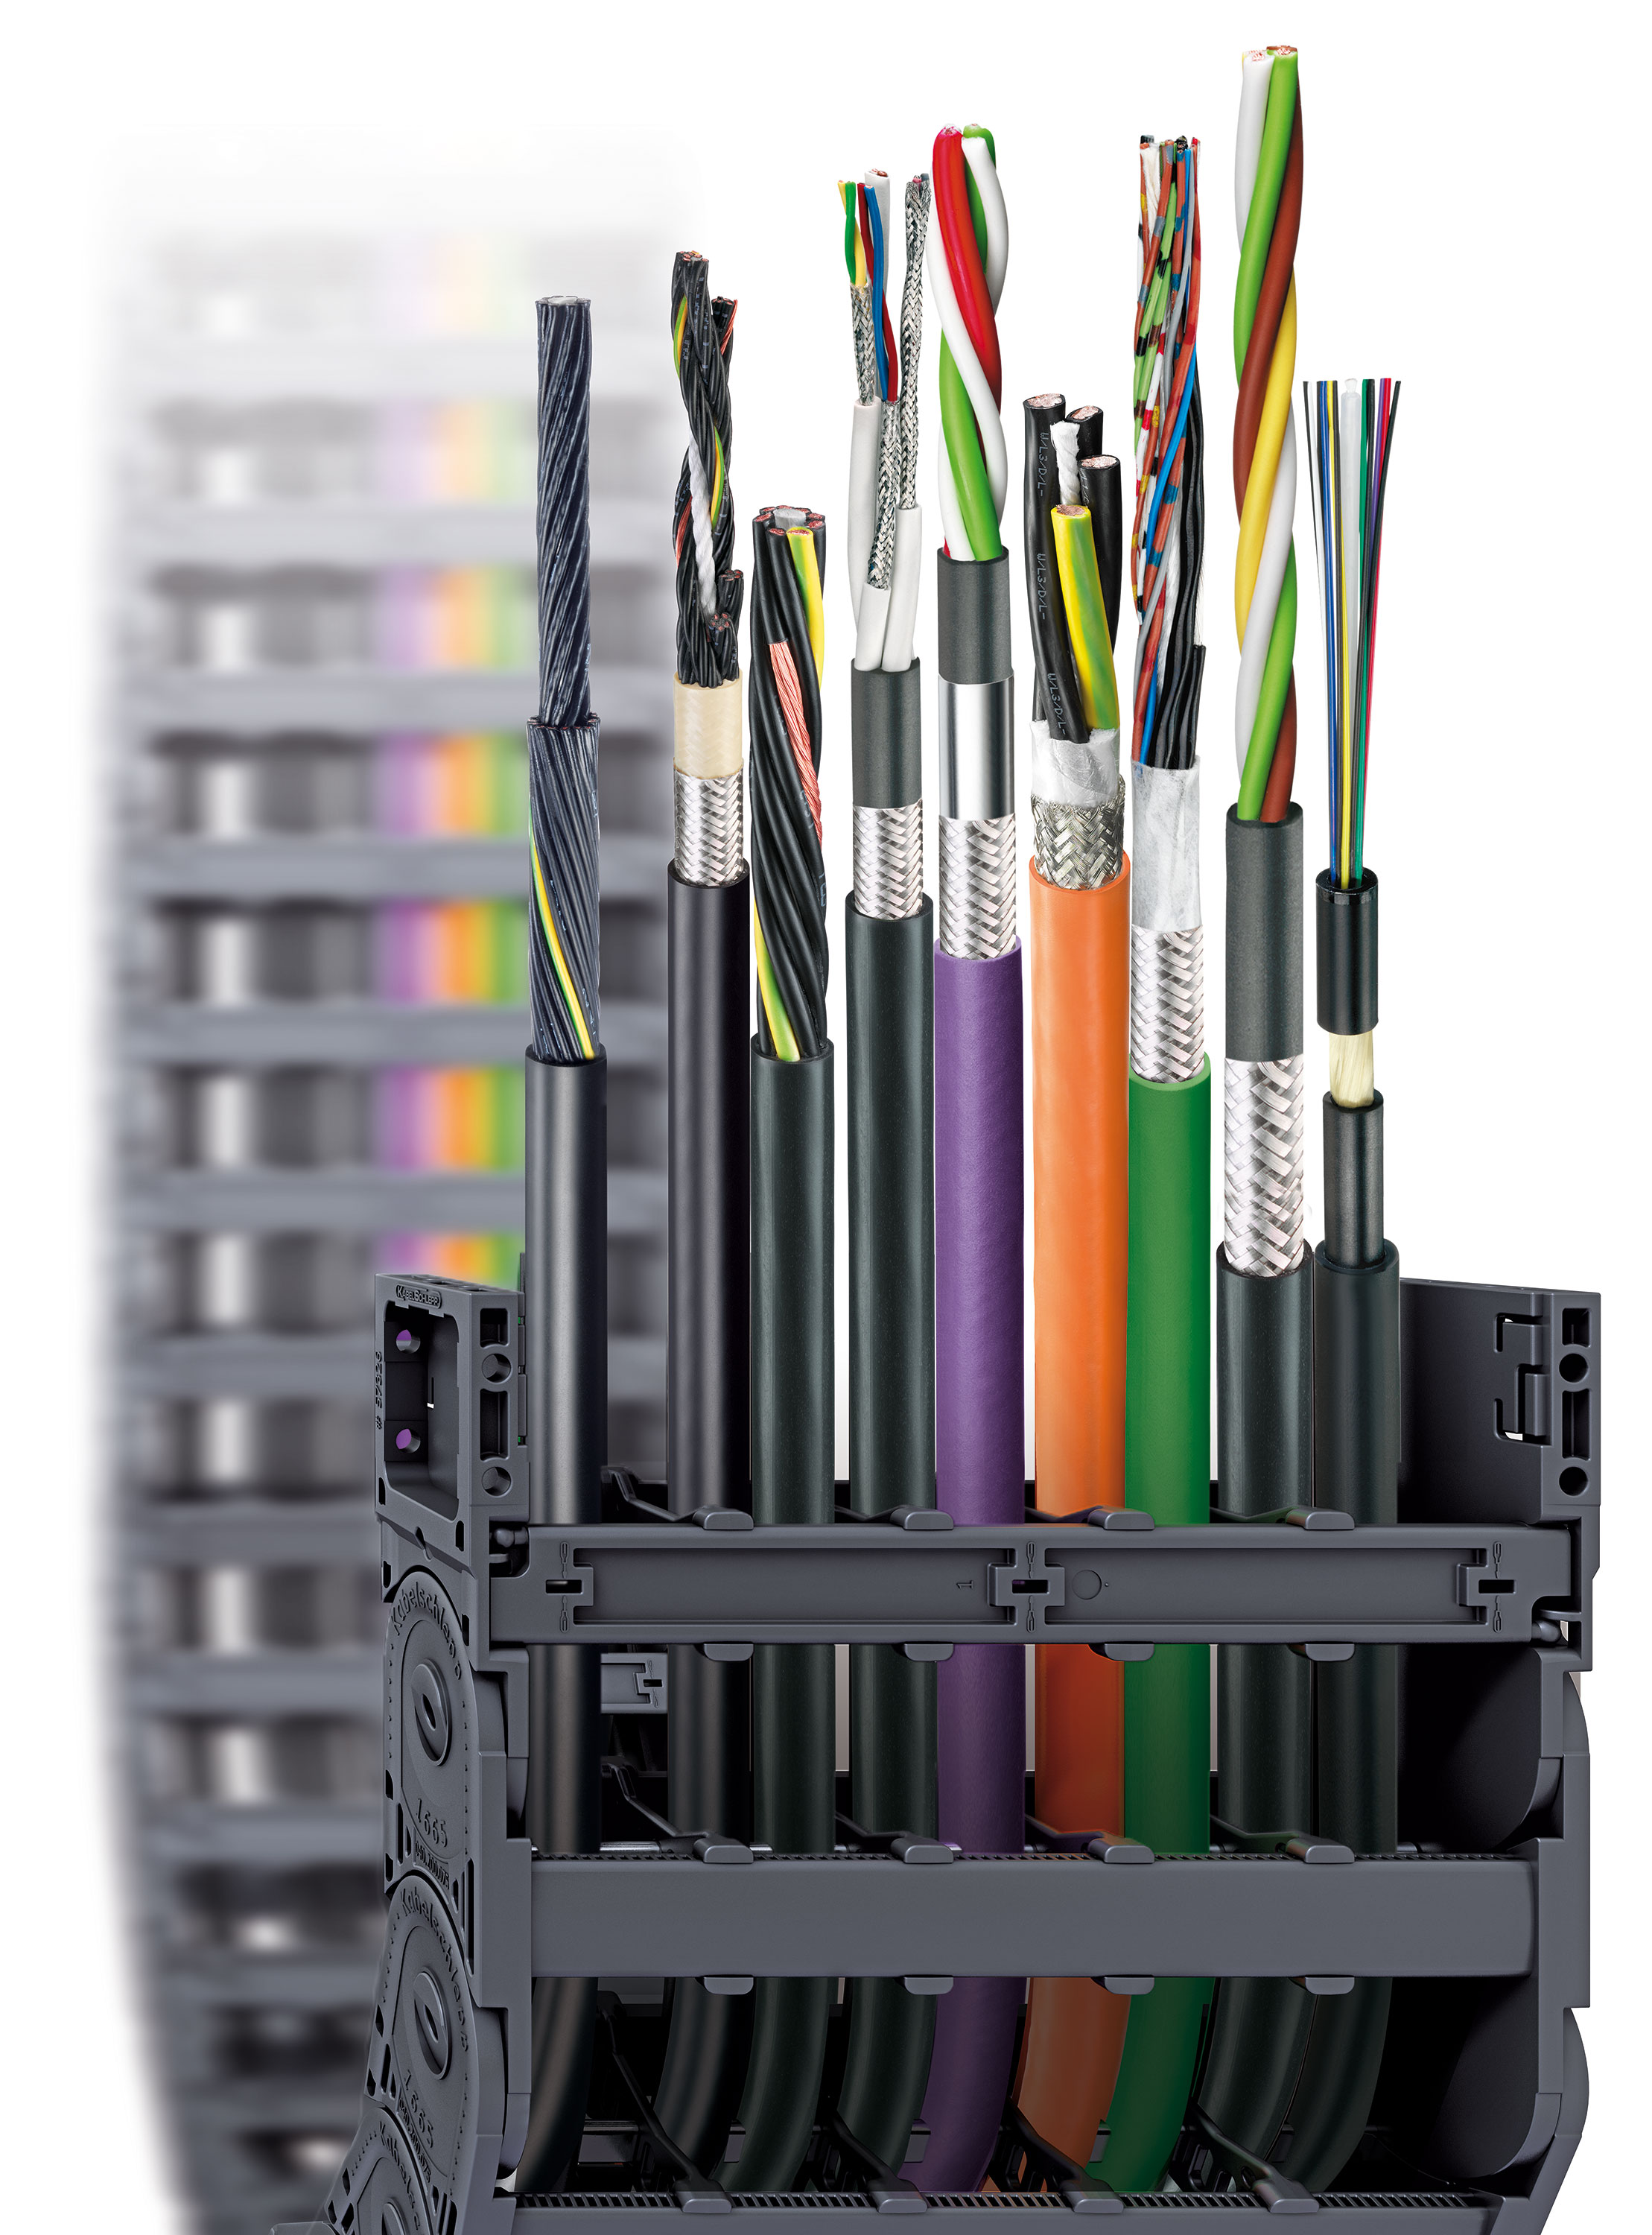 KABELSCHLEPP  TRAXLINE une offre cohérente de câbles spécifiques pour toutes chaînes porte-câble